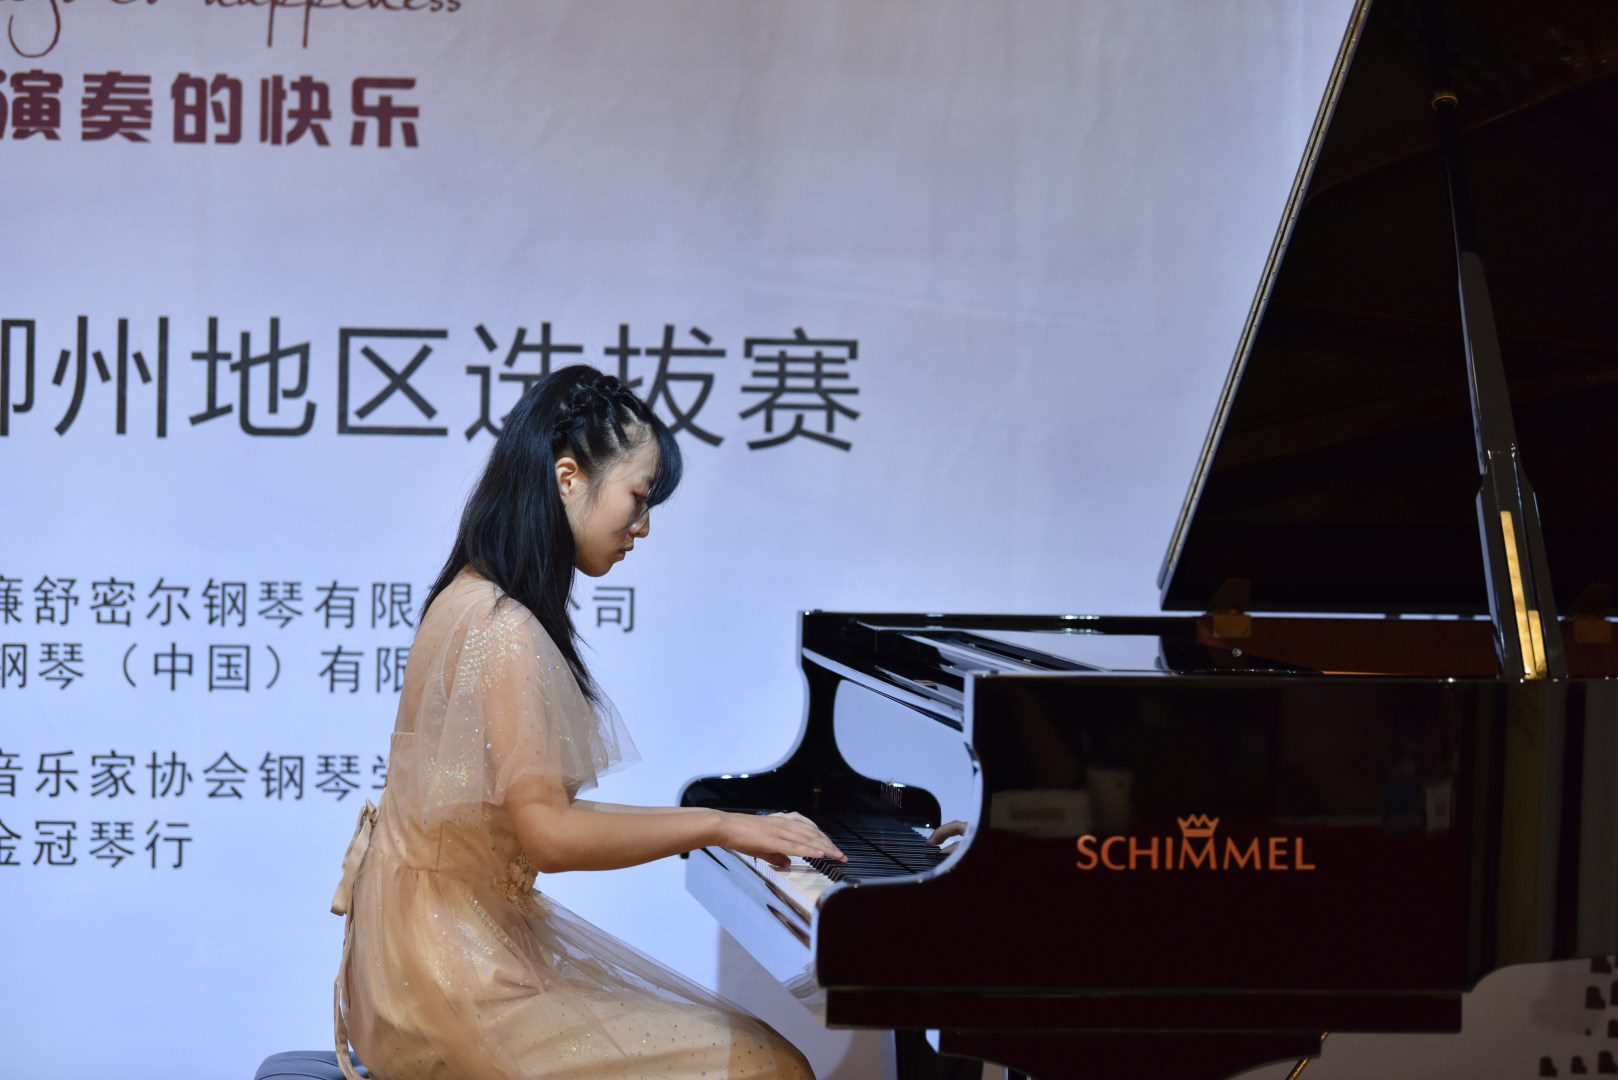 舒密尔钢琴赛事资讯 | 焦作、广州、柳州、天水选拔赛圆满落幕